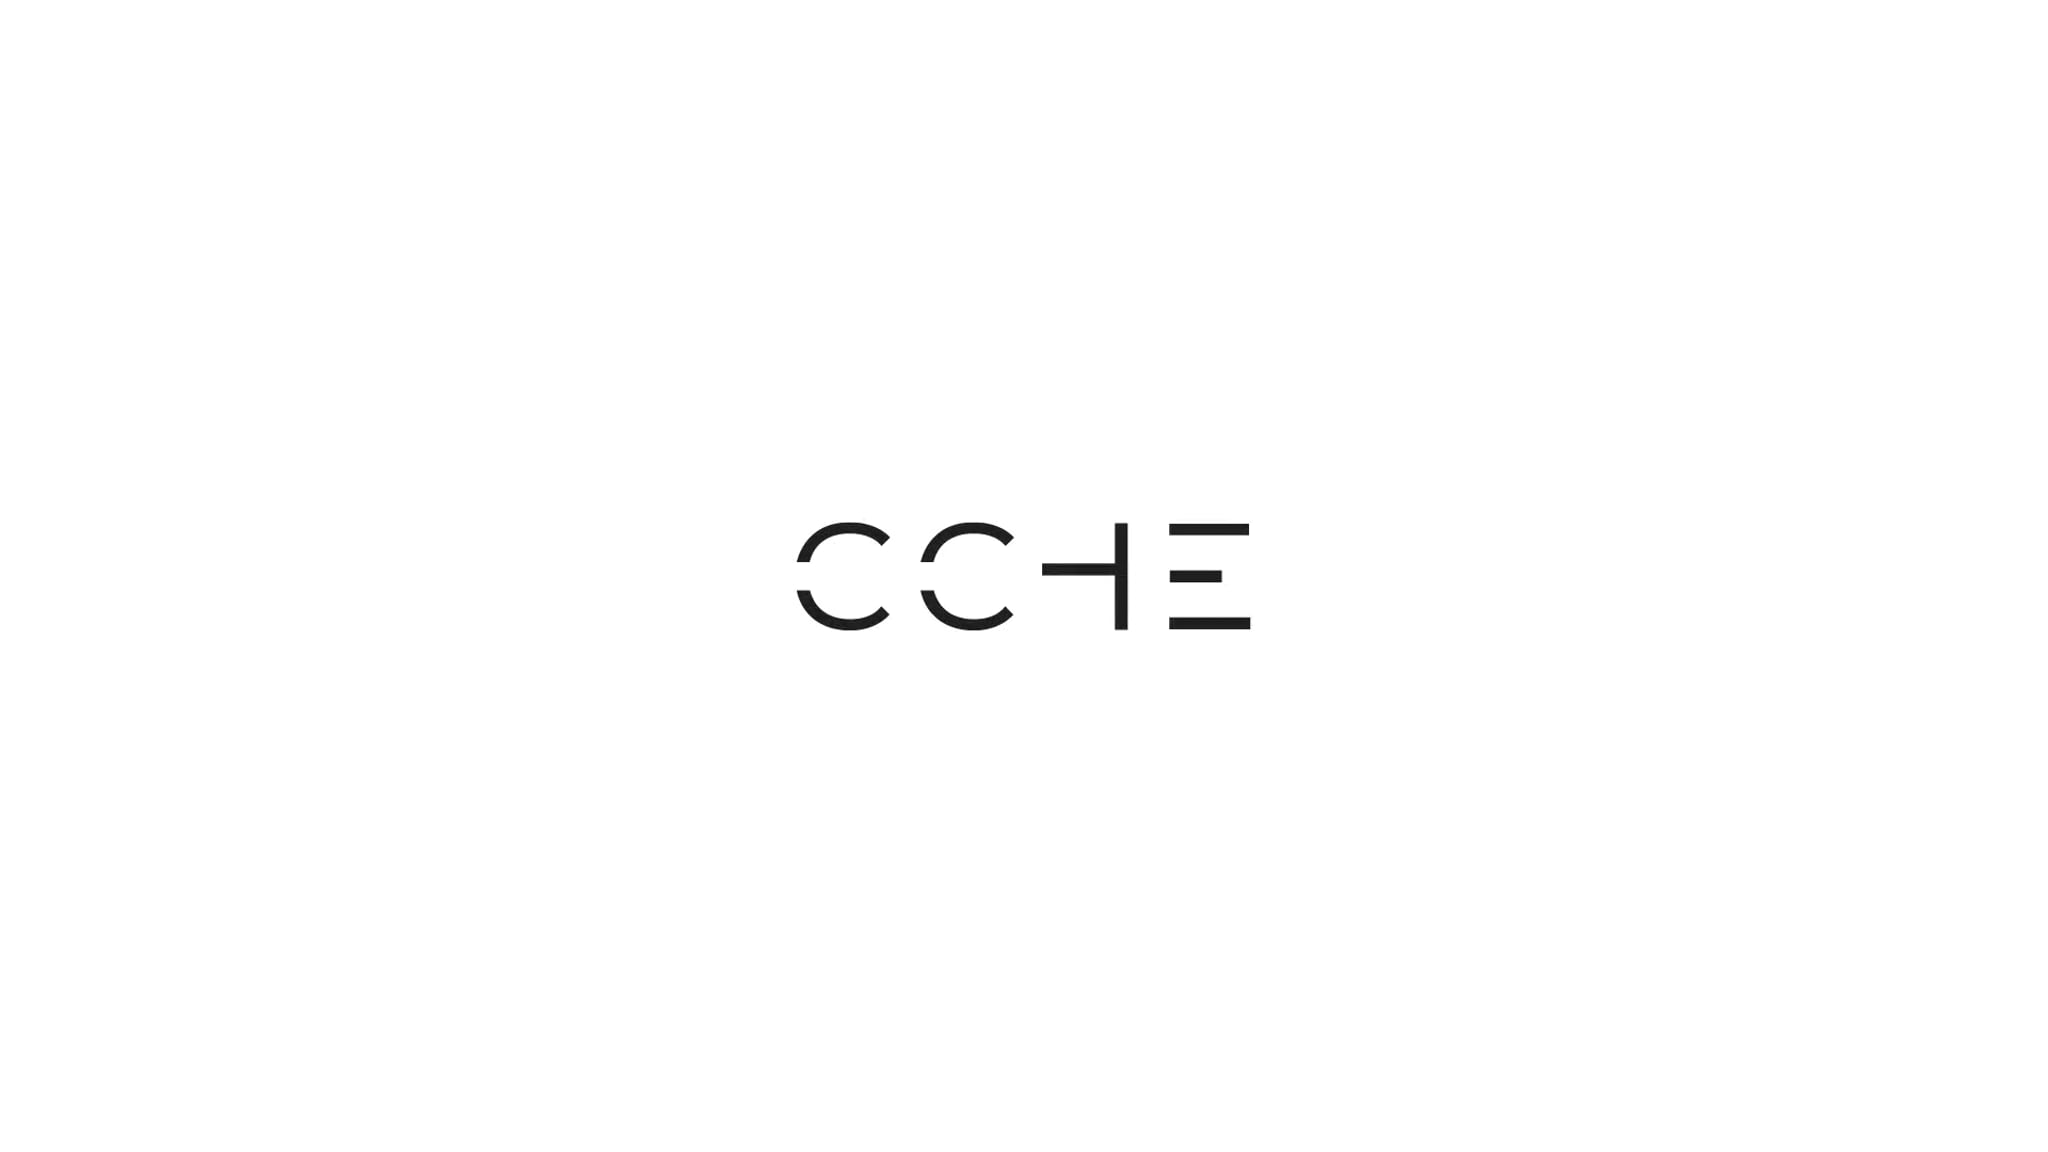 ACTU : Nouvelle filiale CCHE à Zürich